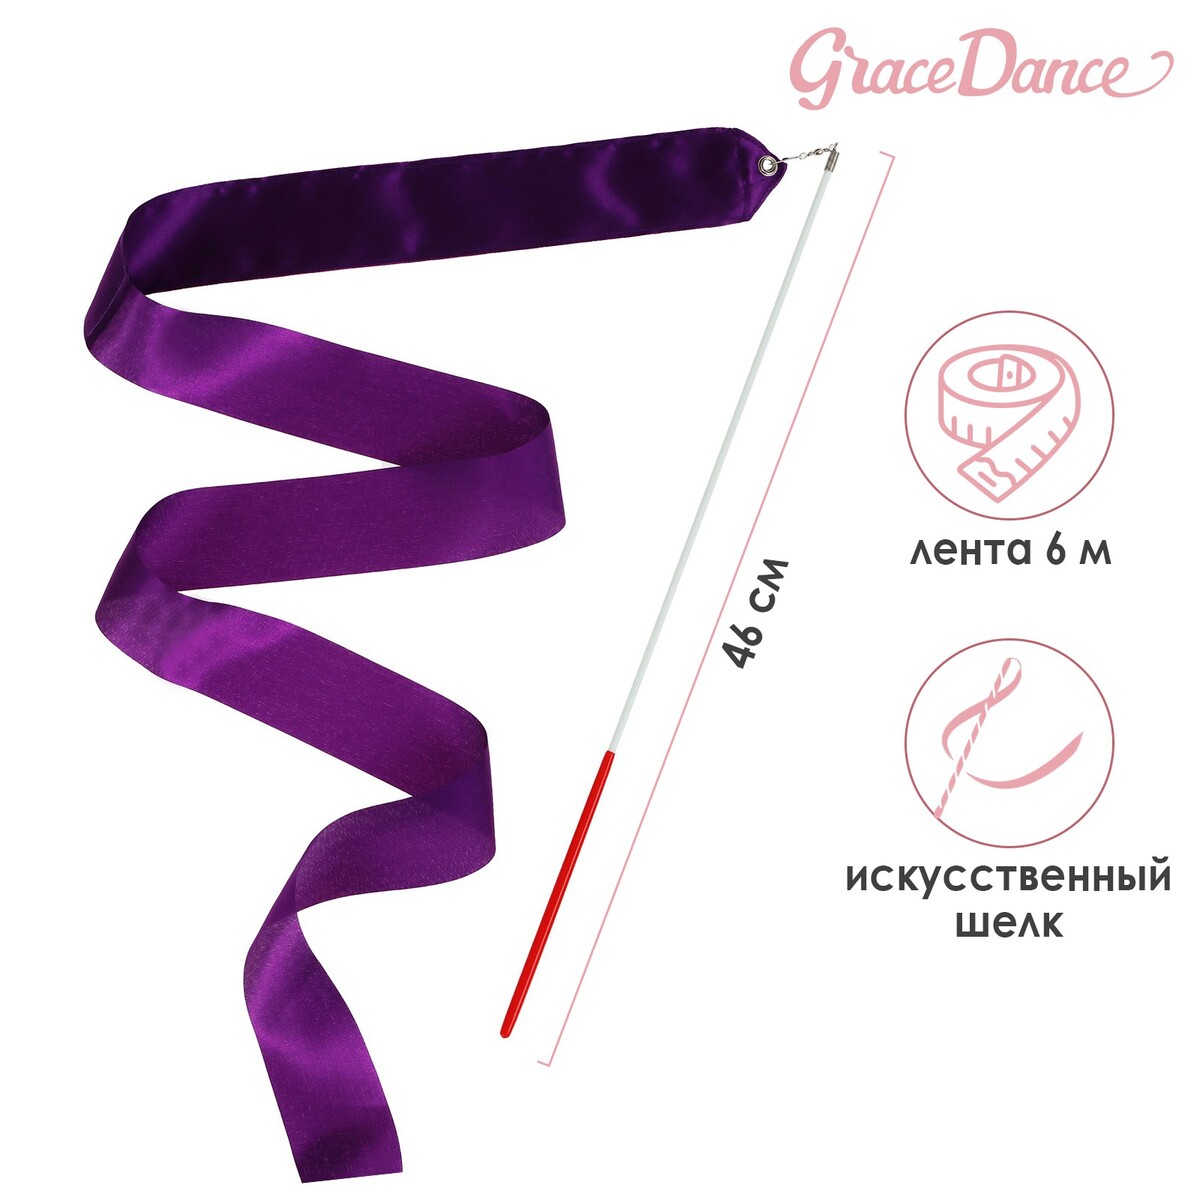 Лента для художественной гимнастики с палочкой grace dance, 6 м, цвет фиолетовый лента фиксации rockbros для перевозки и хранения велосипедов зеленый rb 51210071002